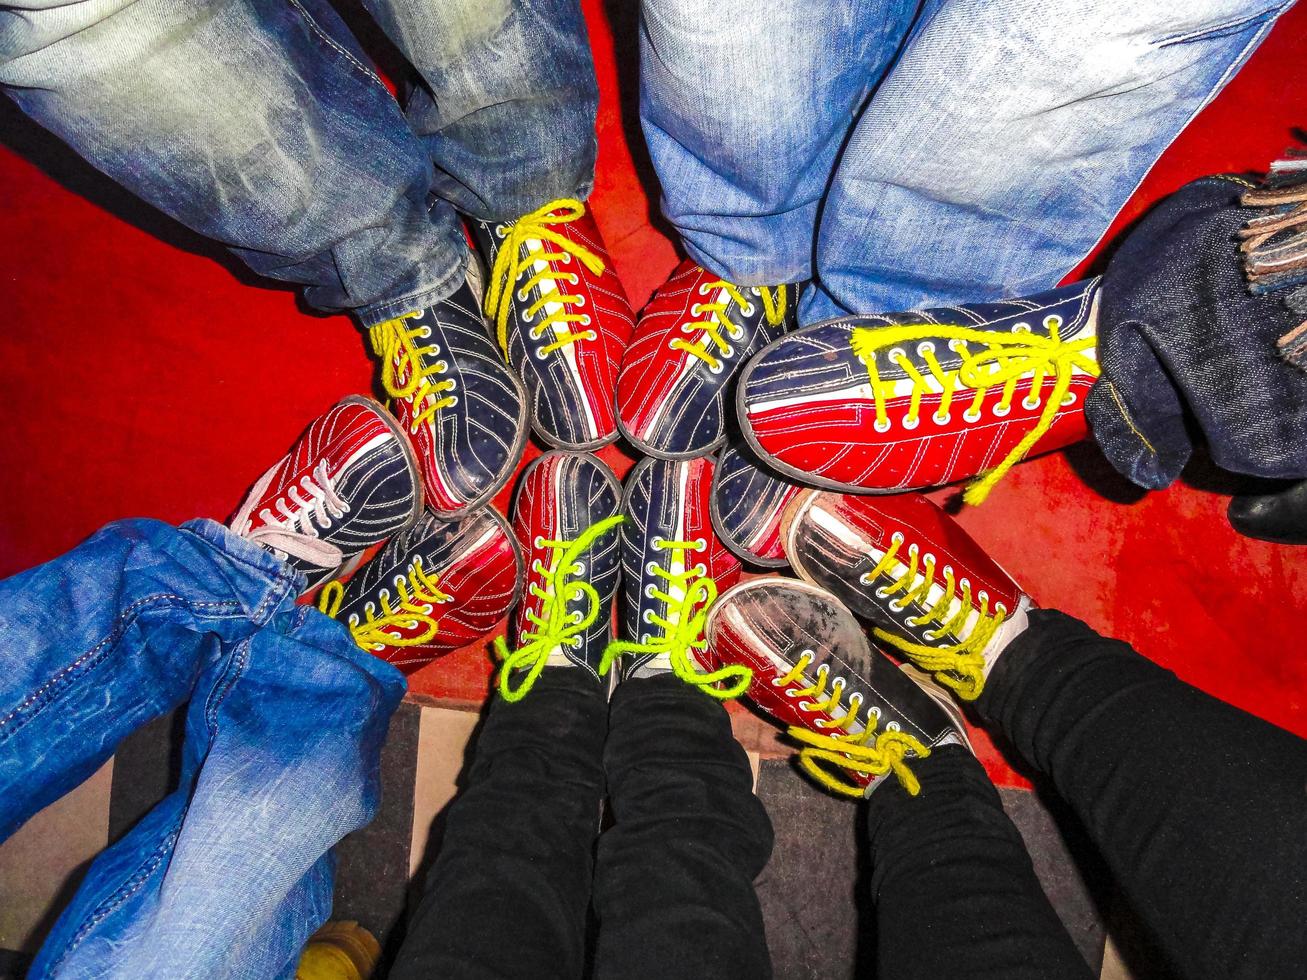 chaussures de bowling rouges et bleues en allemagne. photo